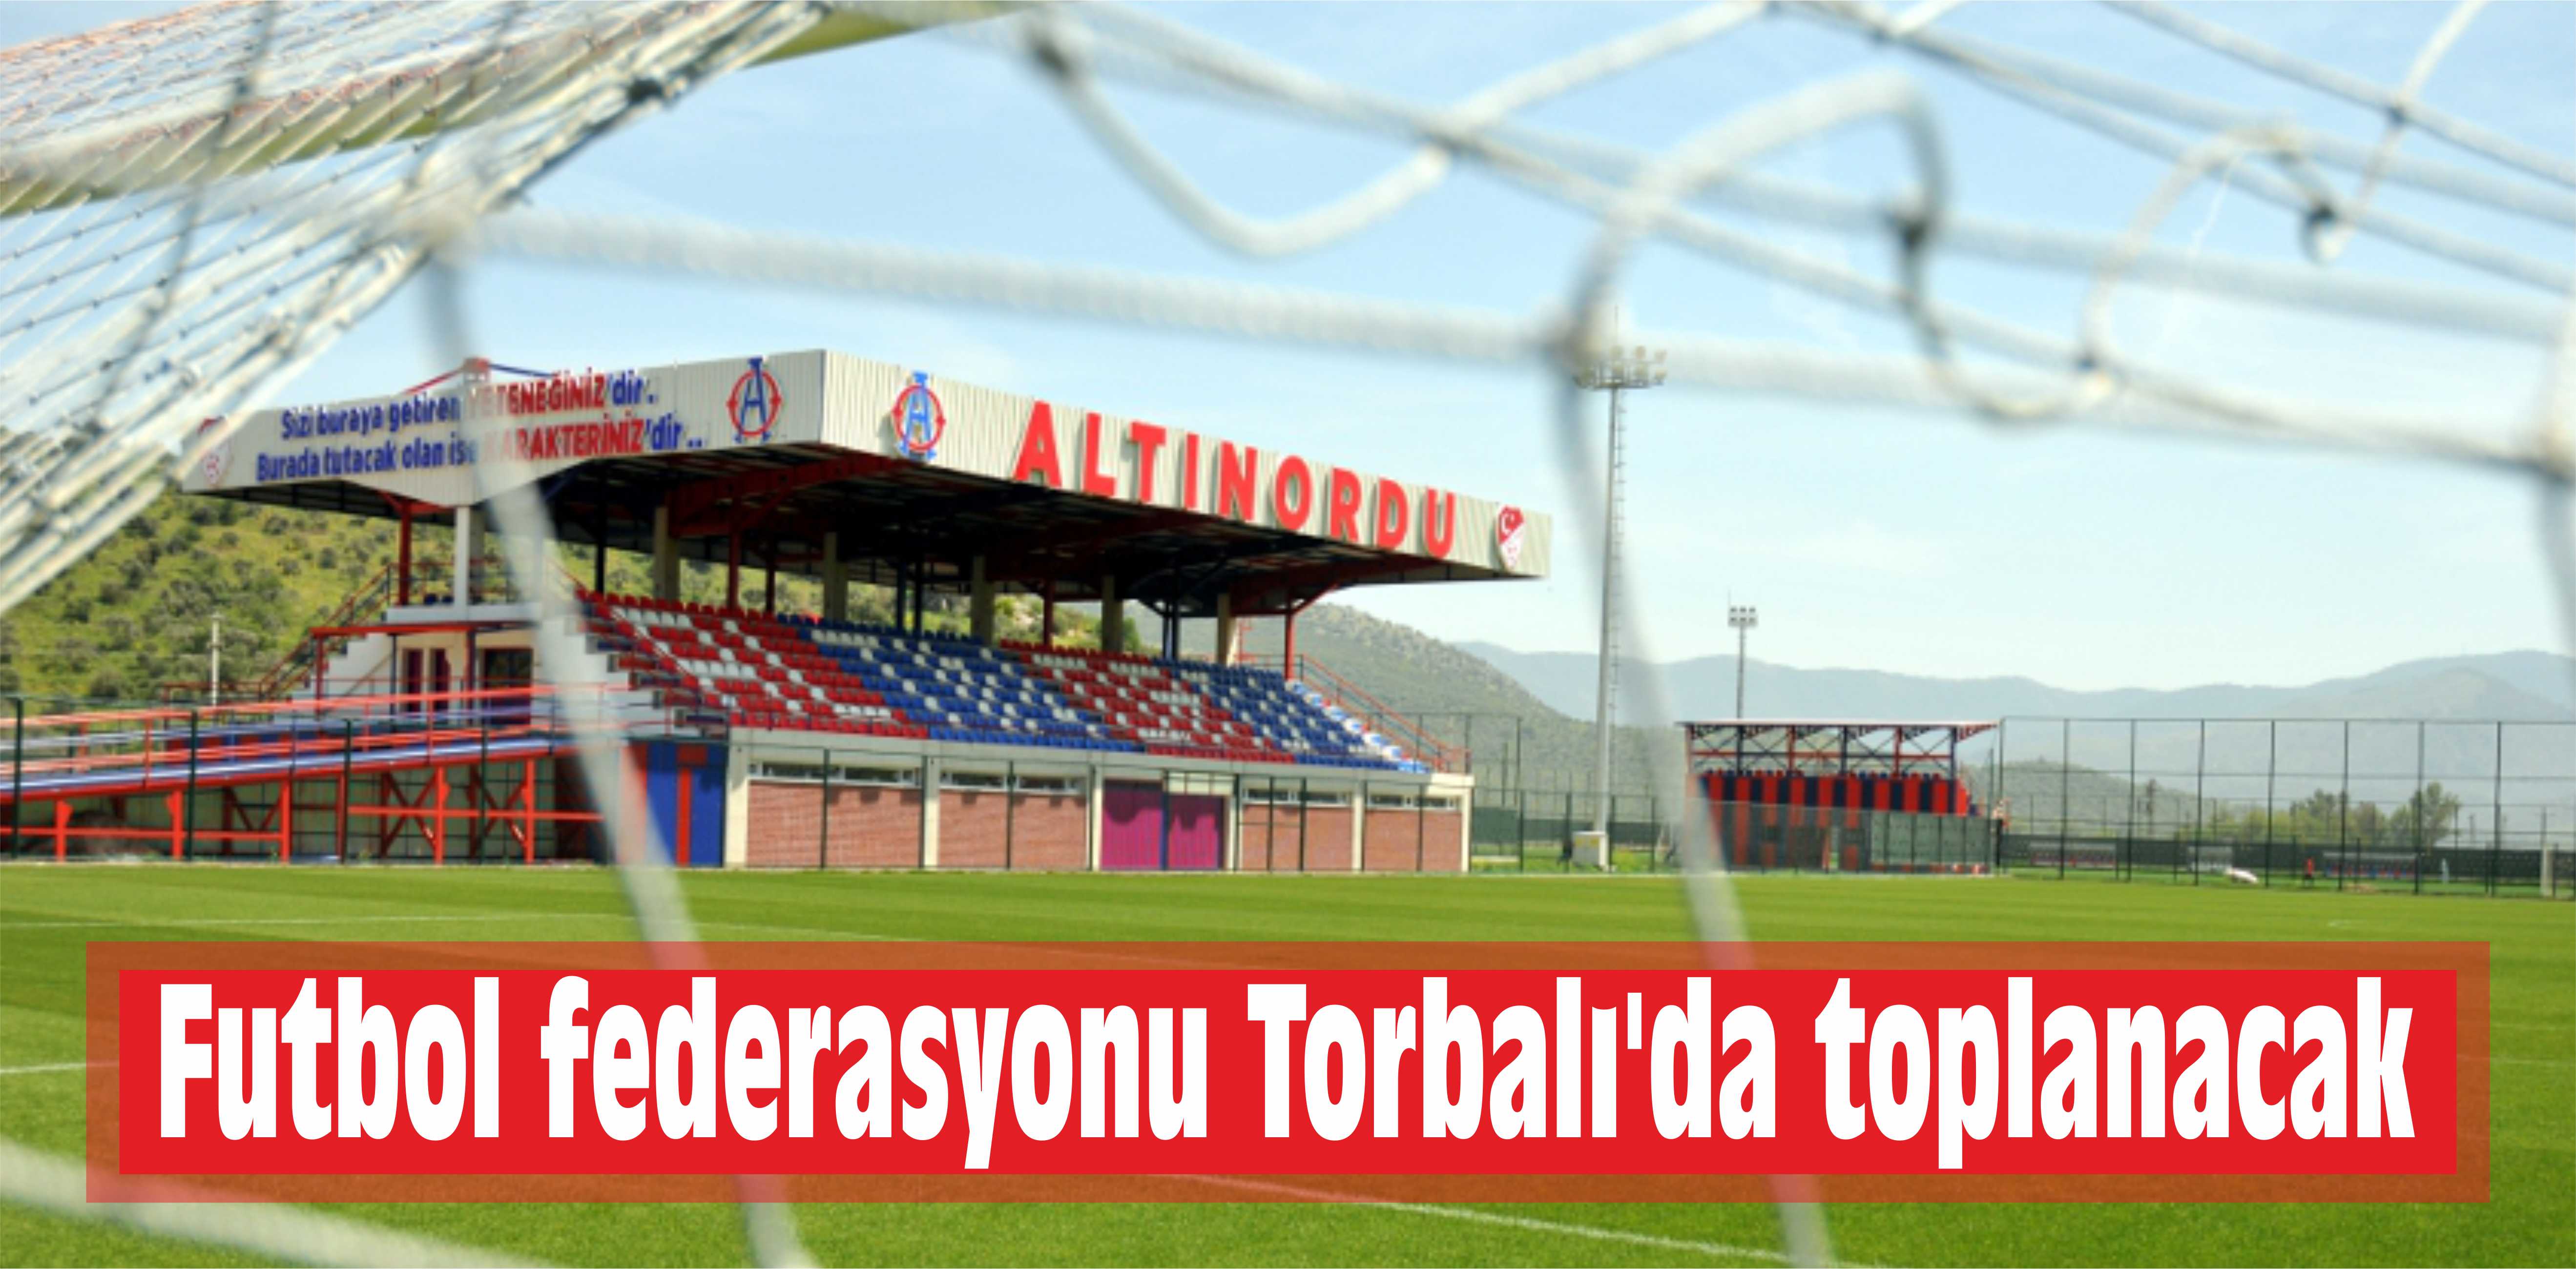 Futbol federasyonu Torbalı’da toplanacak